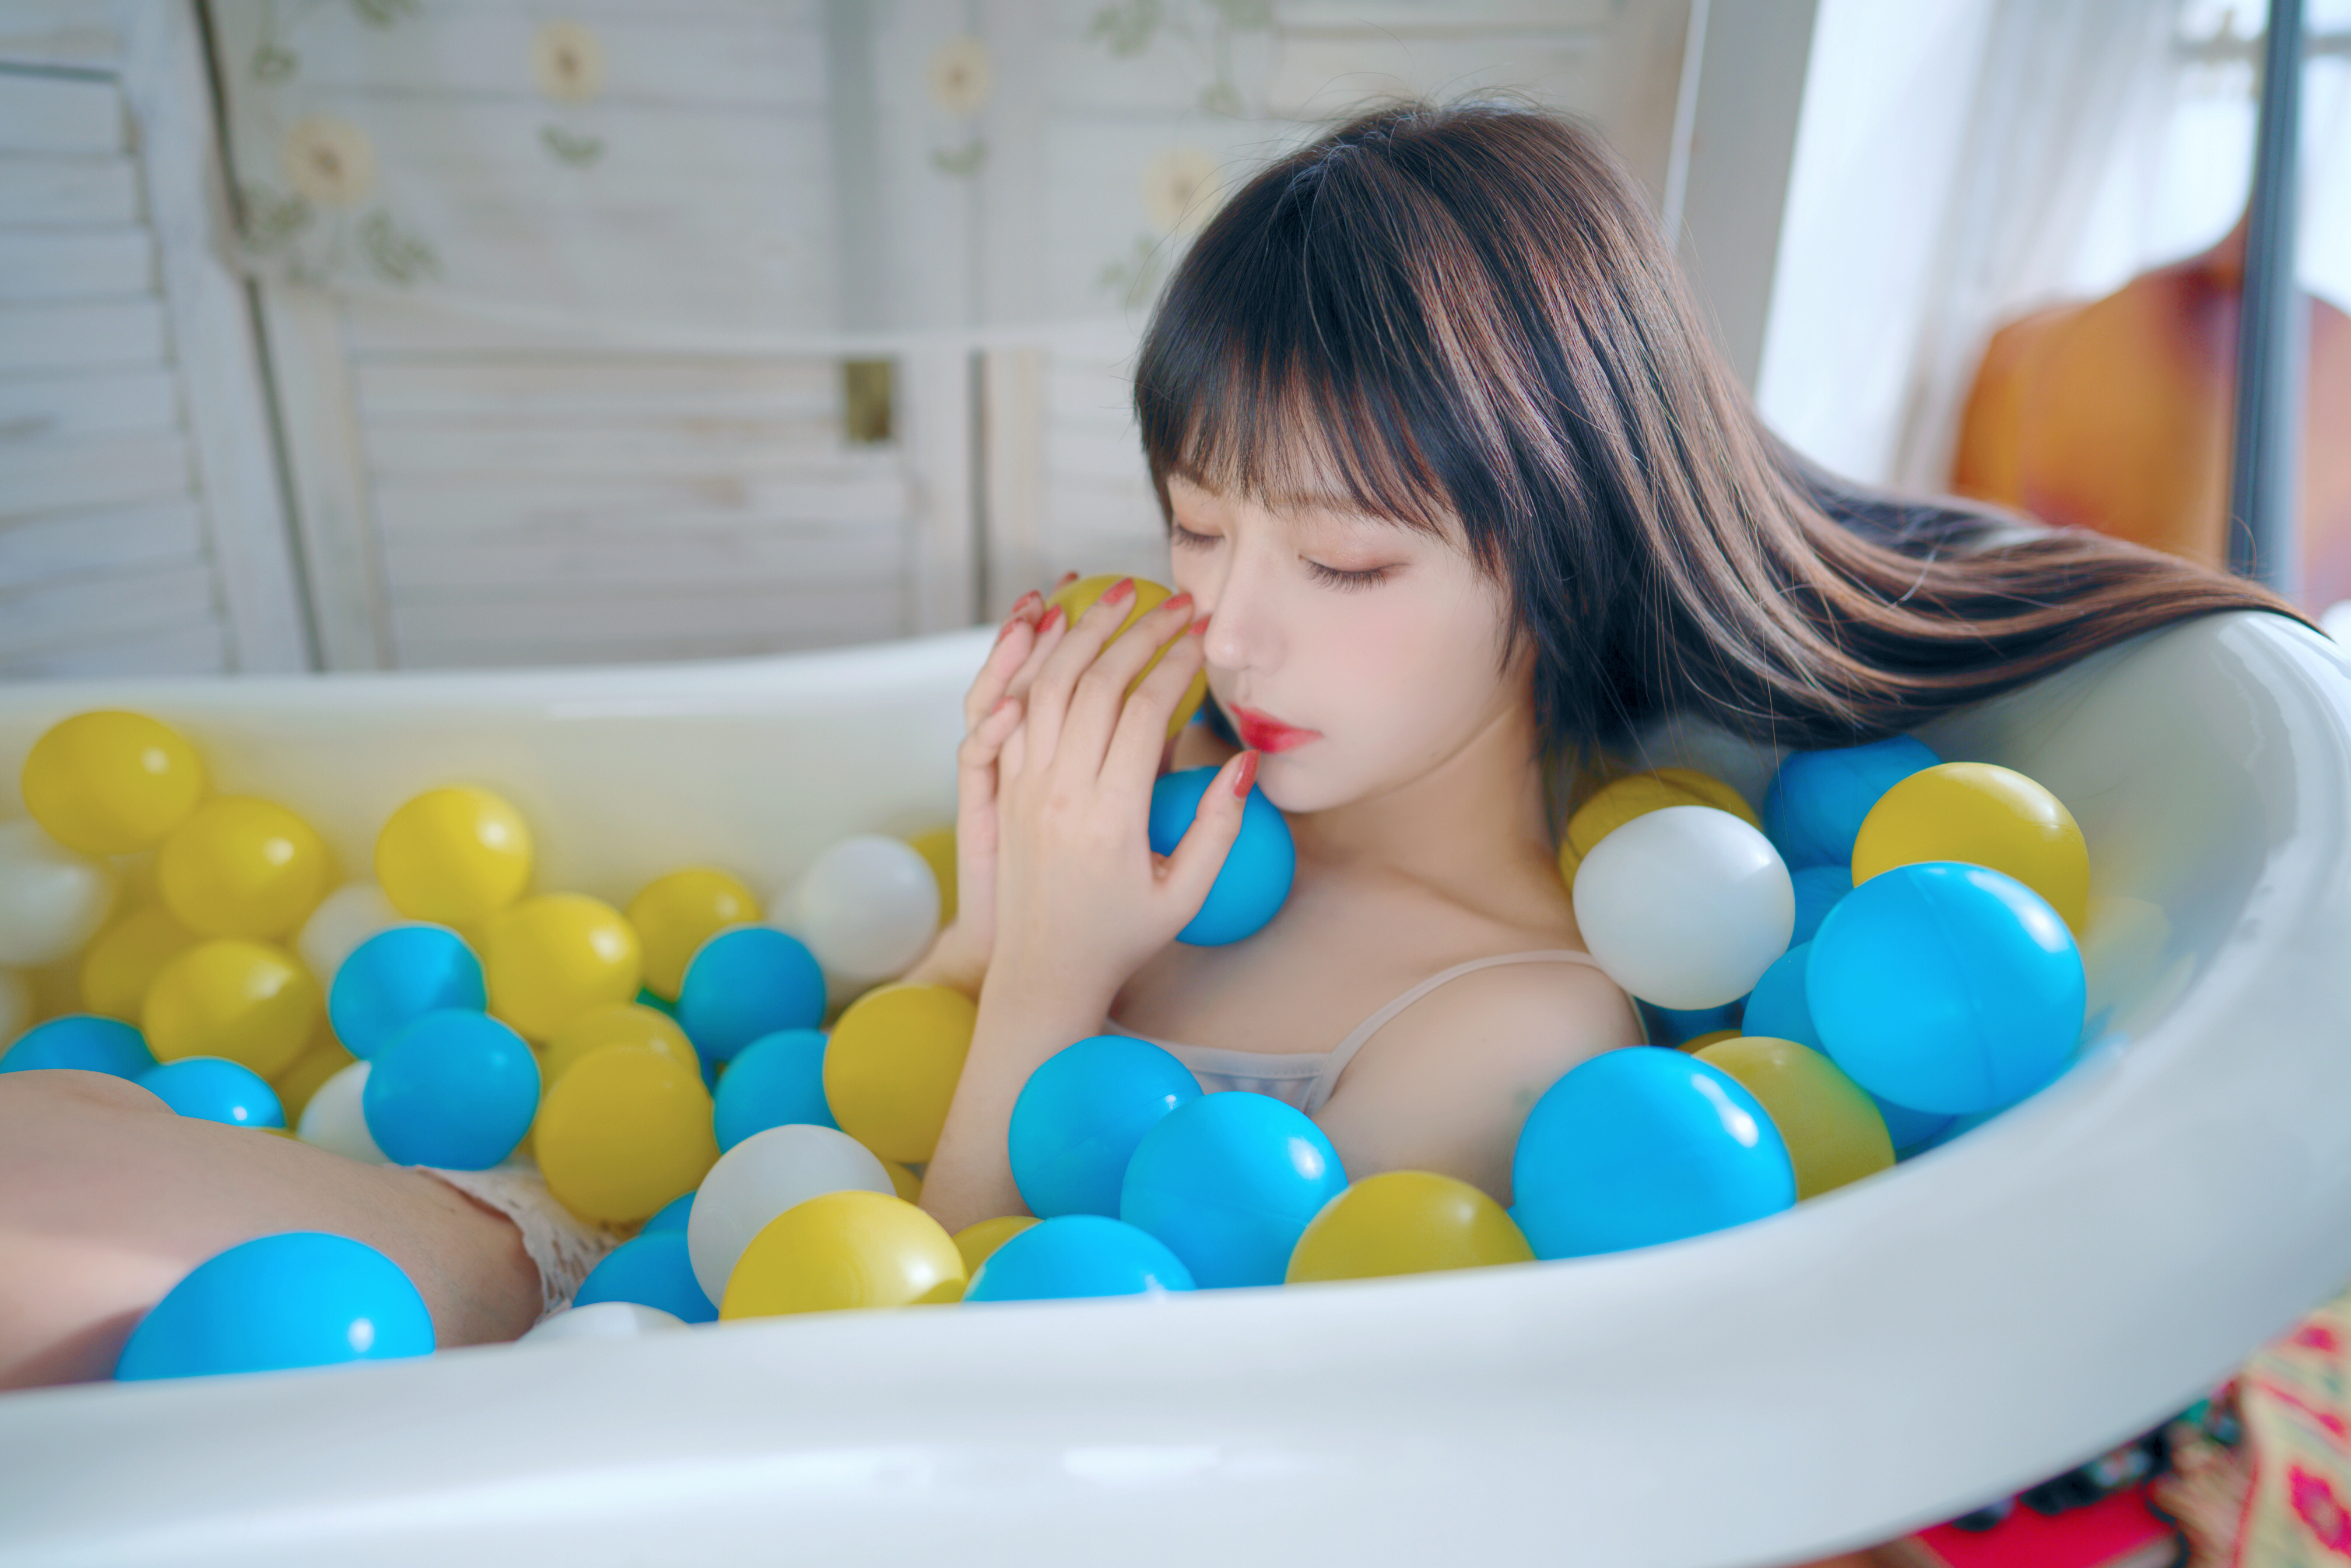 People 4032x2690 Asian in bathtub ball pit women